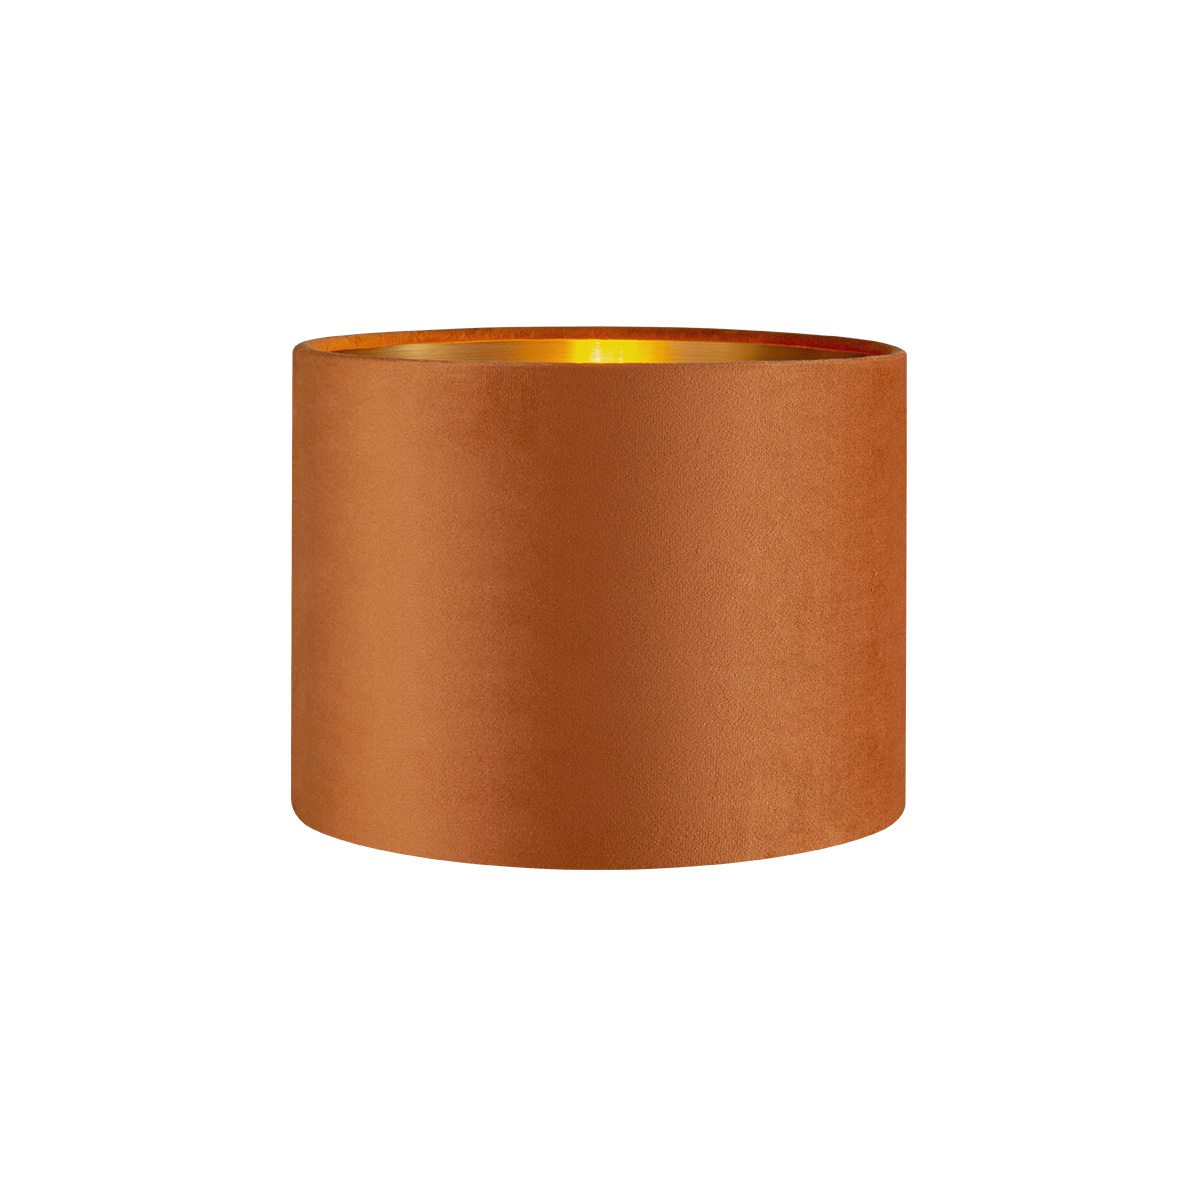 Tangla lighting - TLS7564-25OG - Lampshade - velvet - orange - diameter 25cm - E27